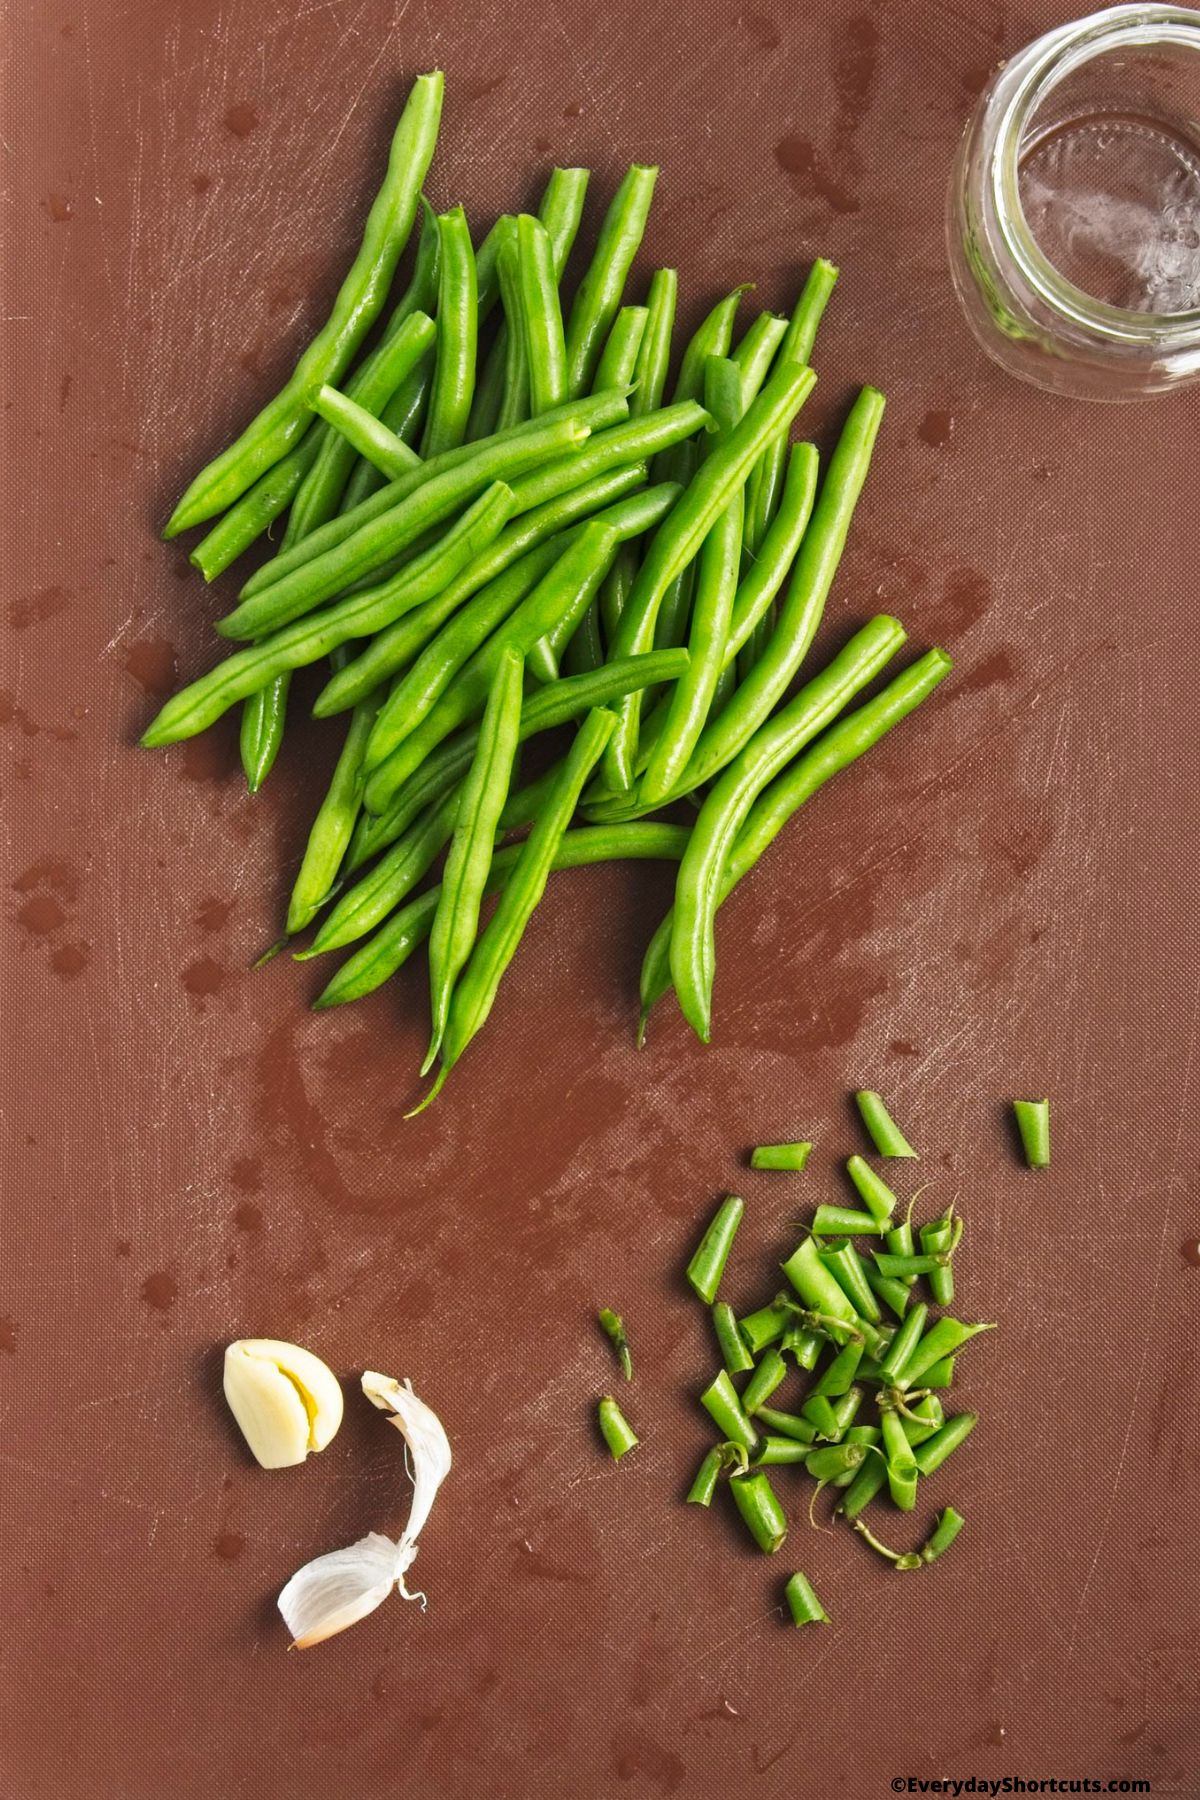 cut stems off green beans